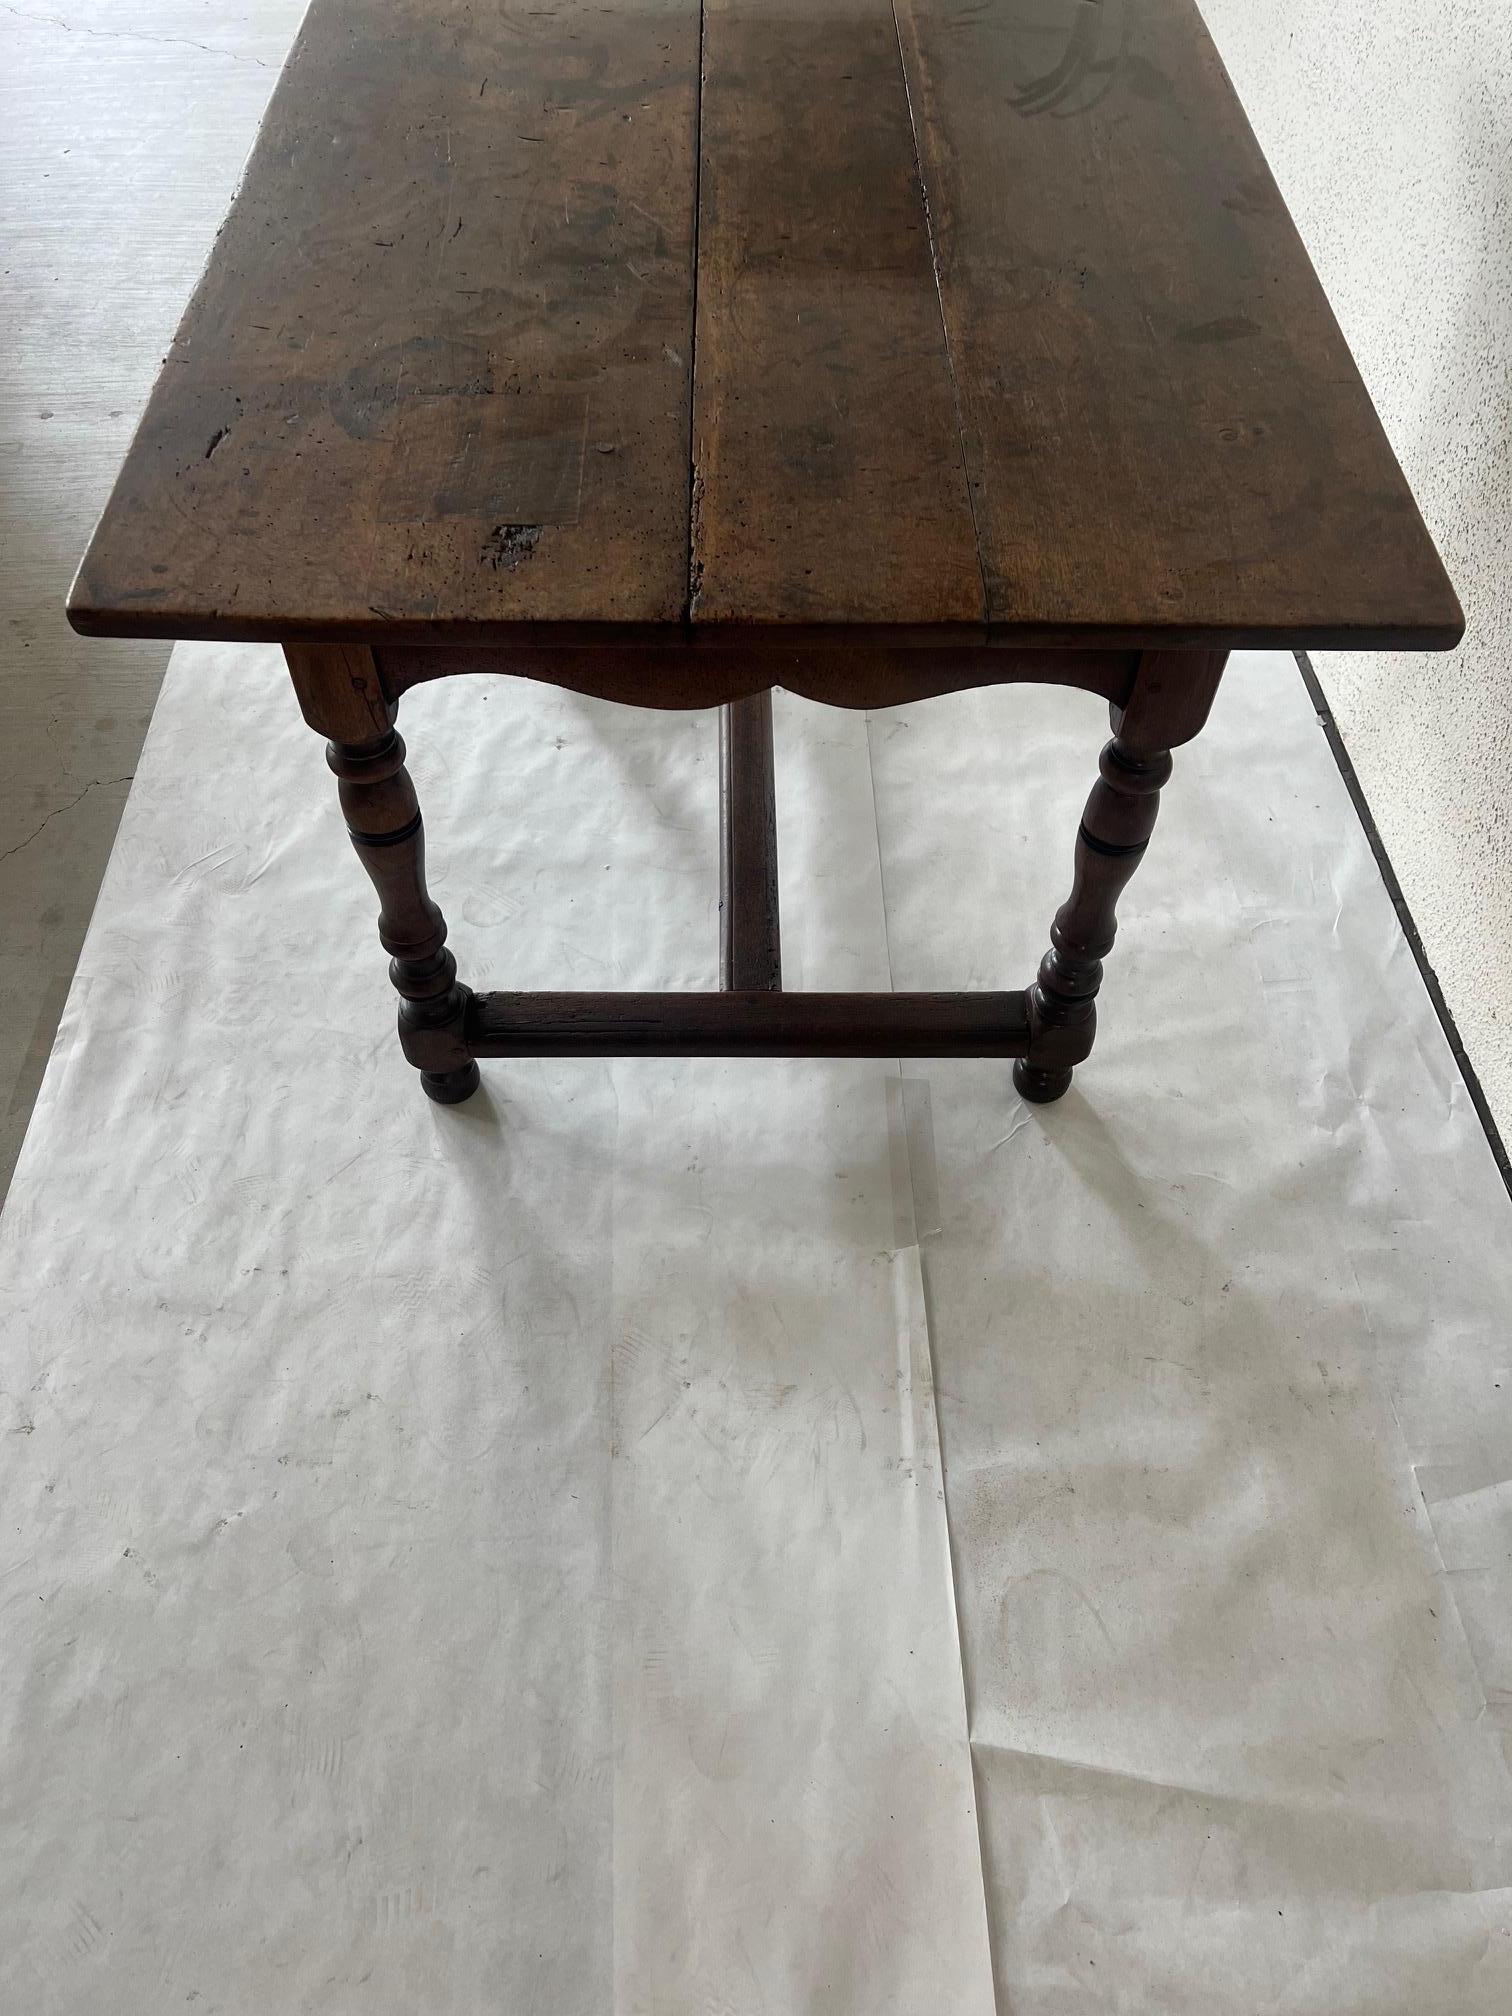 antique kitchen work table